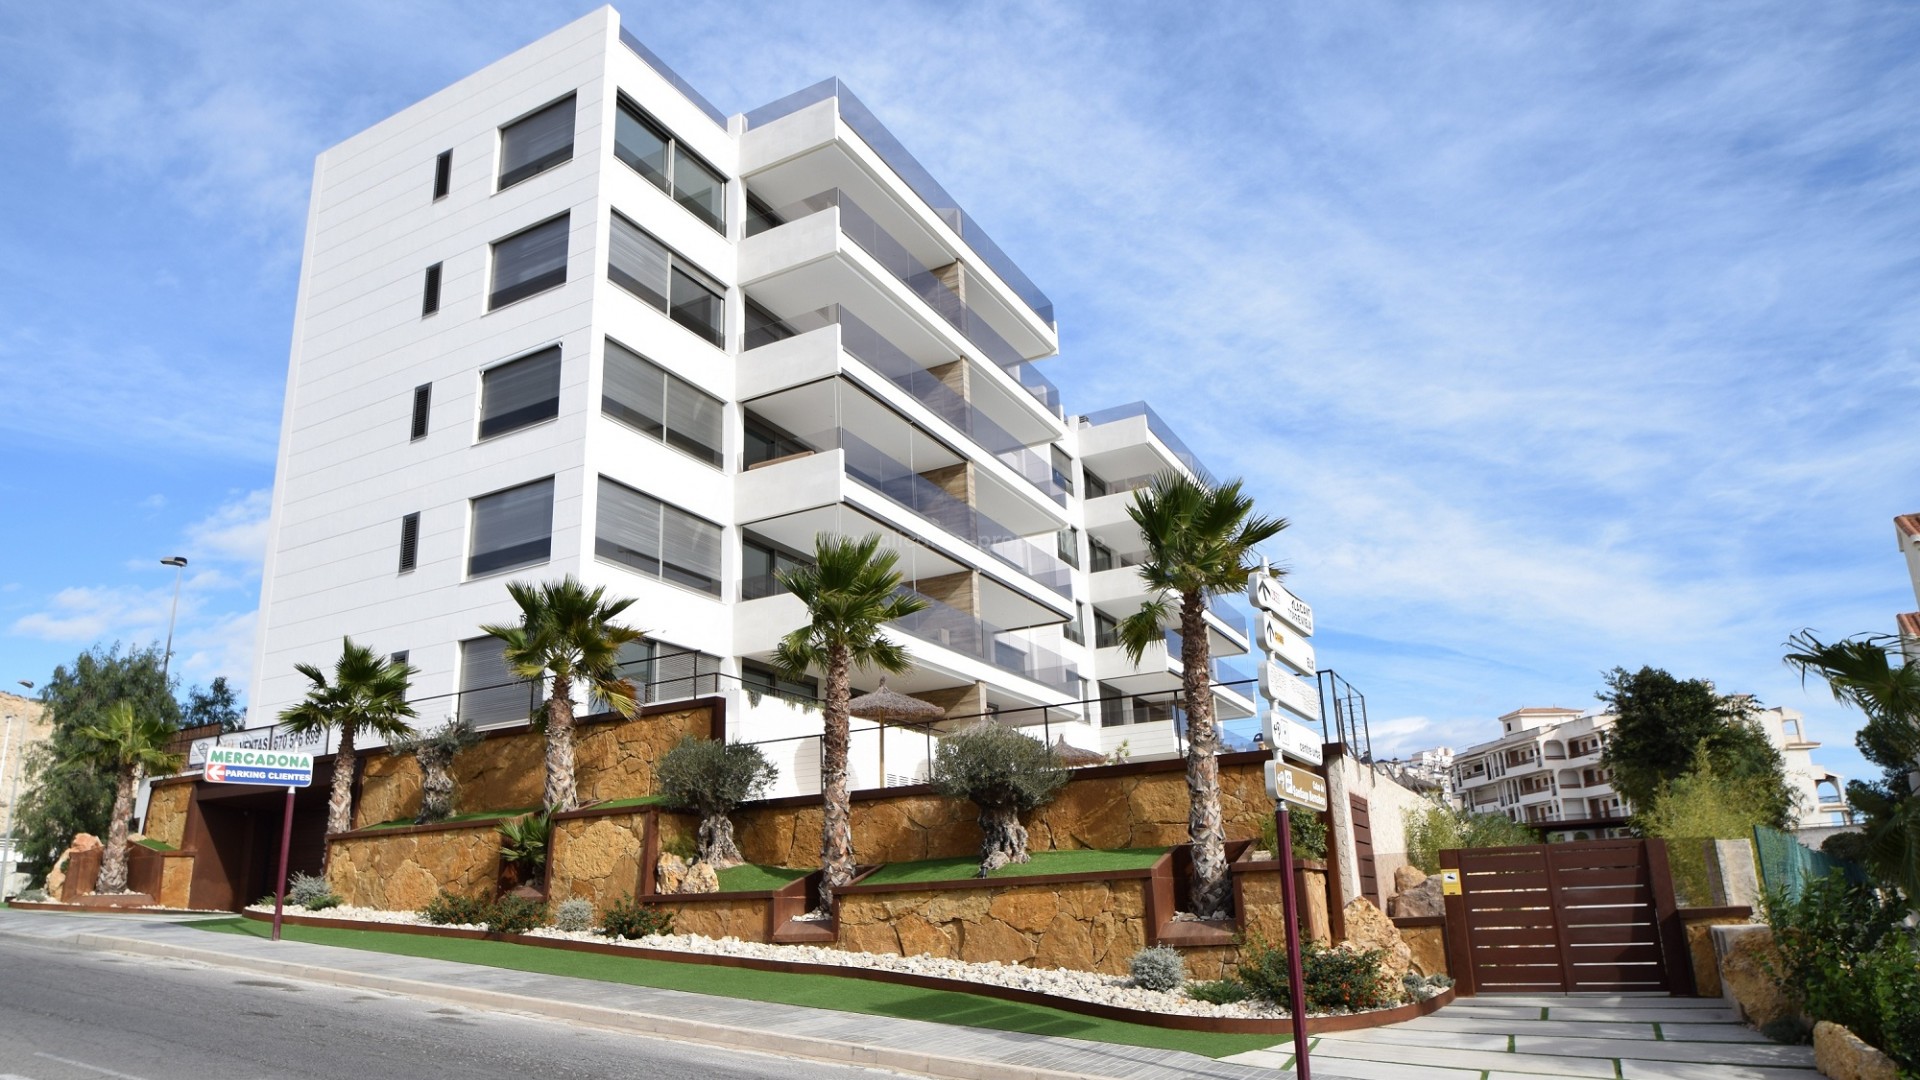 20 nye moderne leiligheter Santa Pola, 3 soverom, 2 bad, stor terrasse med hav- og havutsikt, treningsstudio, 2 bassenger, lekeområde i luksuriøst boligområde.